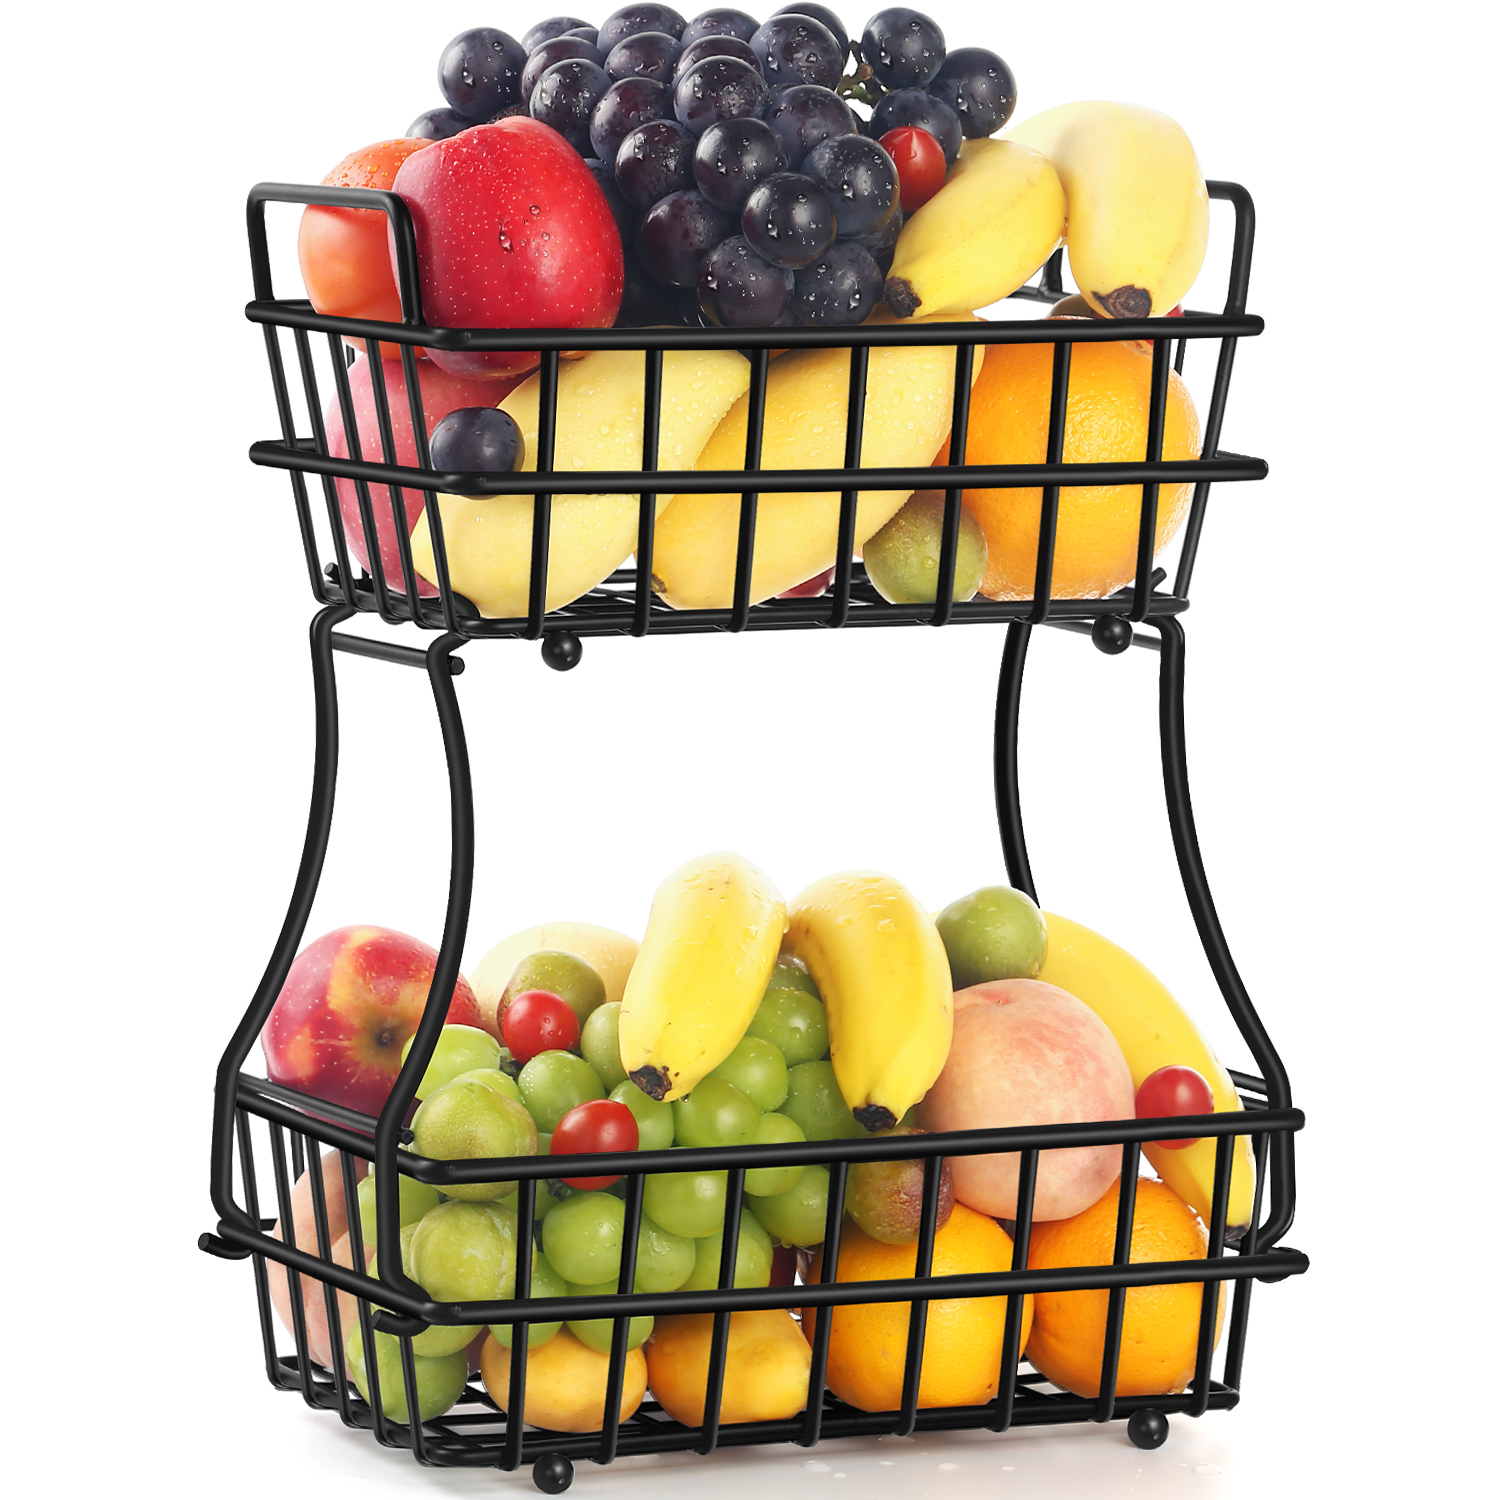 TomCare 2-Tier Fruit Basket Metal Fruit Bowl Bread Baskets Detachable Fruit Holder Kitchen Storage Baskets Stand - Screws Free Design for Fruits Breads Vegetables Snacks, Black